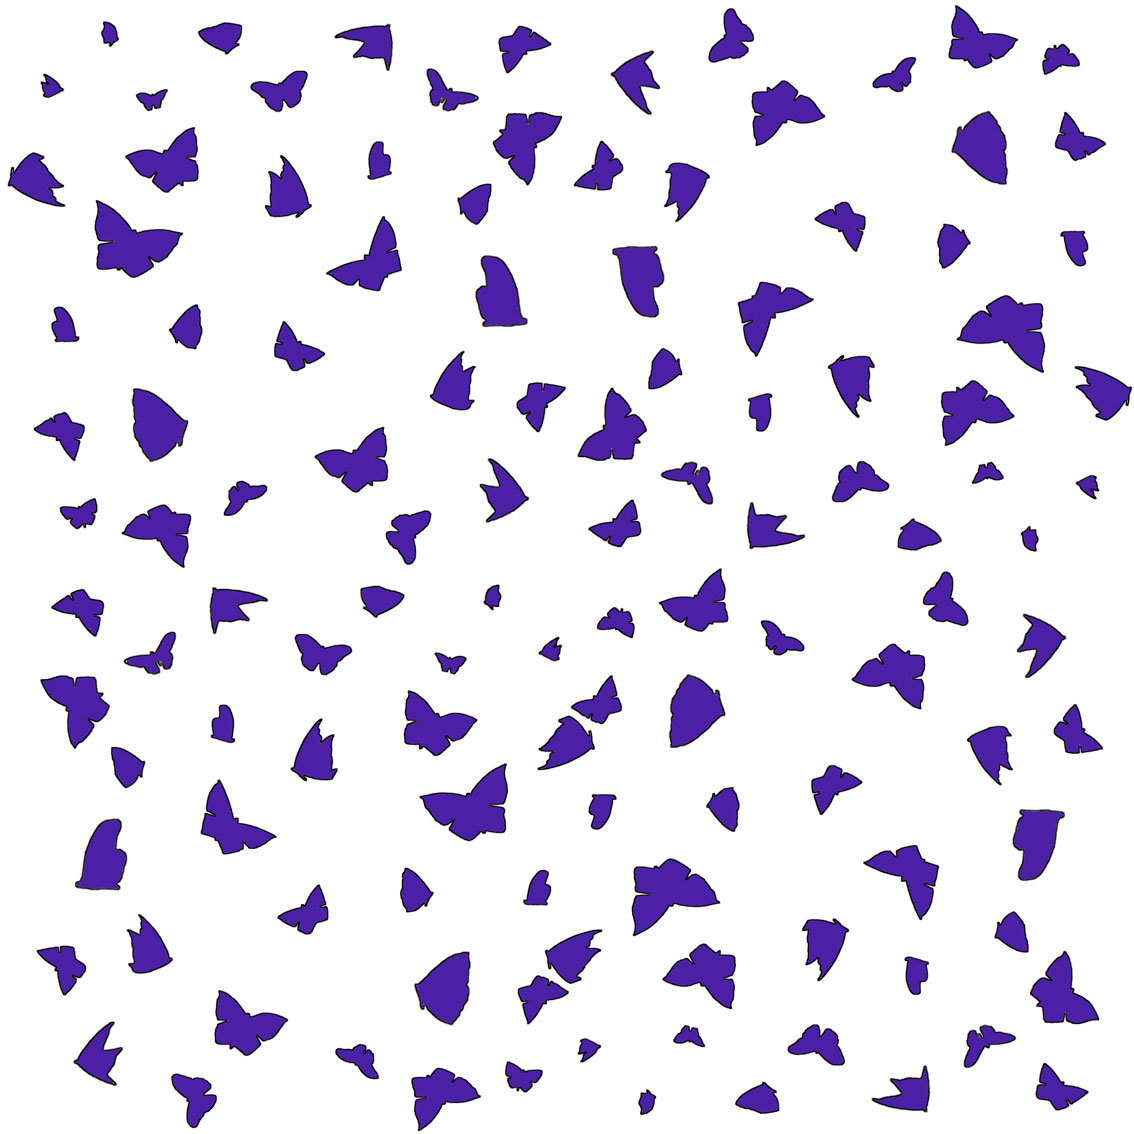 Purple Butterflies on White Papillon-lépidoptère-sphynx-aurore-bombyx-paon-du-jour-monarque Thierry Bisch artiste peintre contemporain animaux tableau art décoration biodiversité conservation 